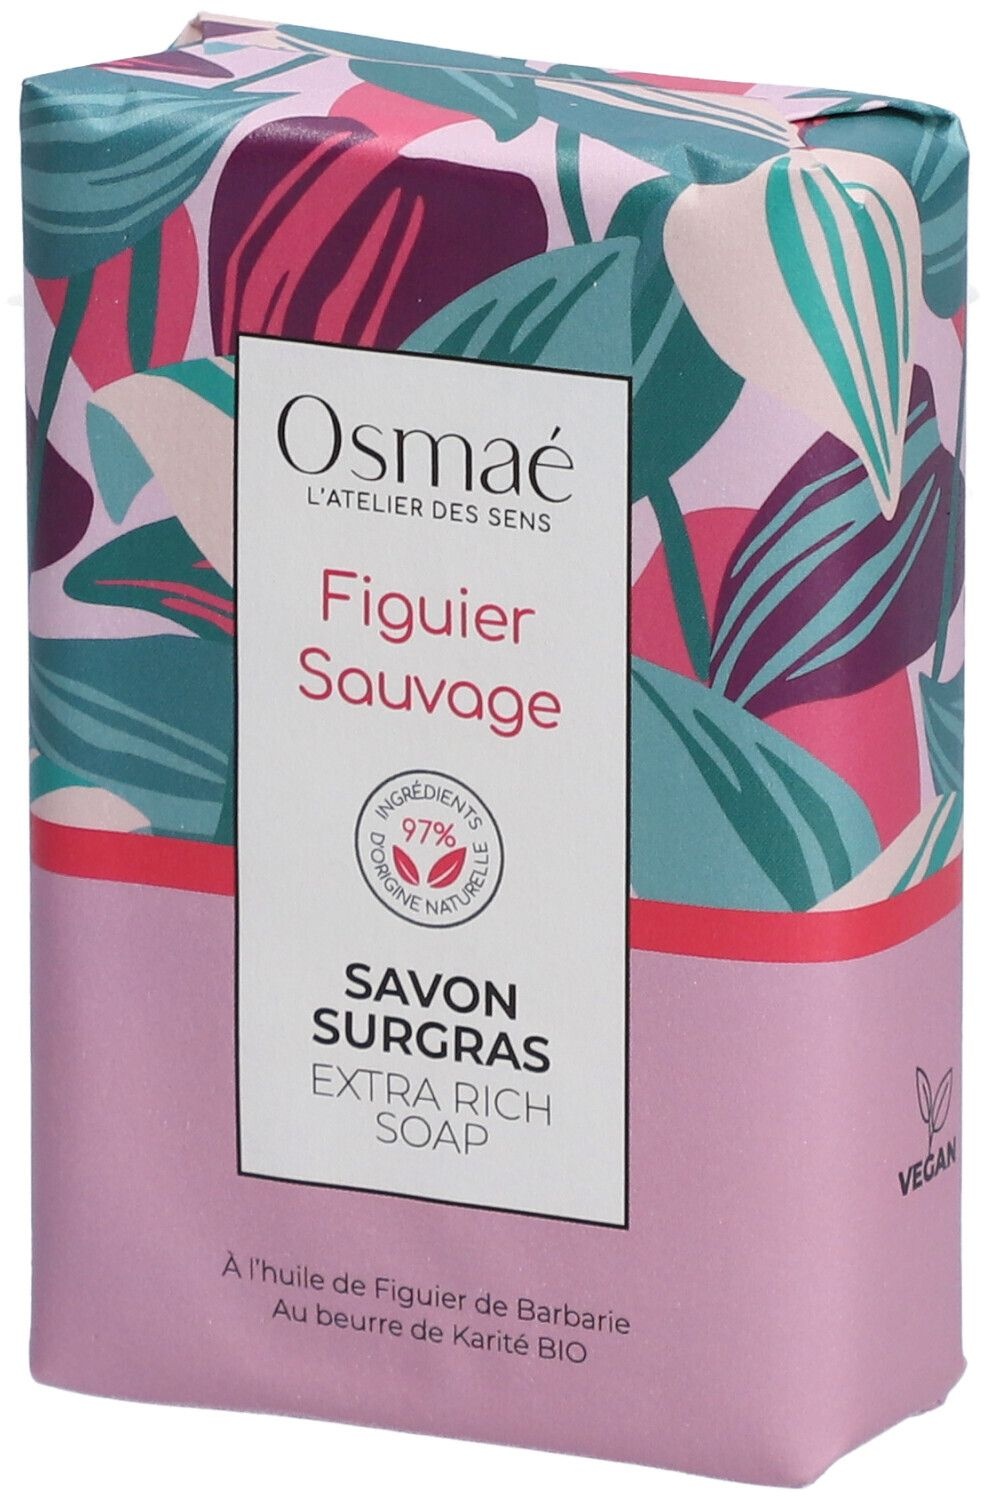 OSMAE Savon surgras Figuier Sauvage 200 g savon